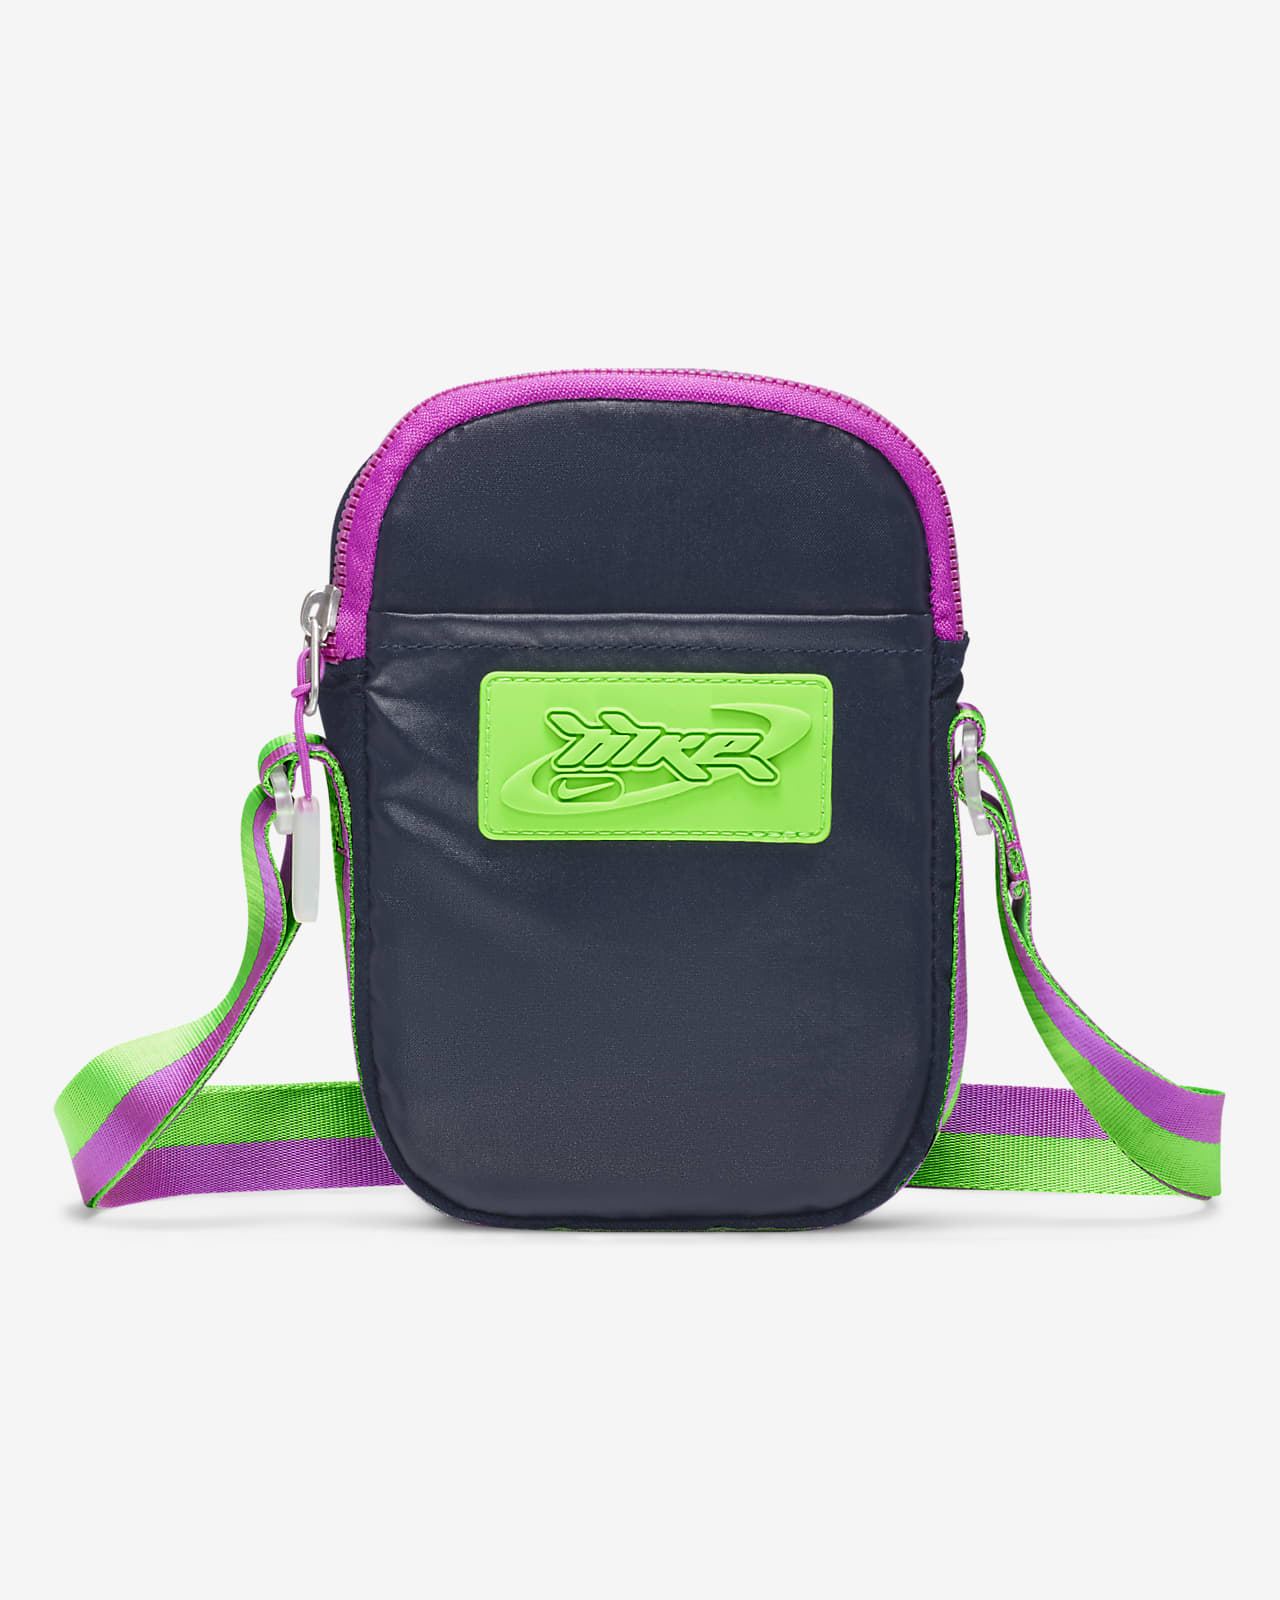 Nike Small Man Bag Adjustable Shoulder Bag Messenger Pouch Purple